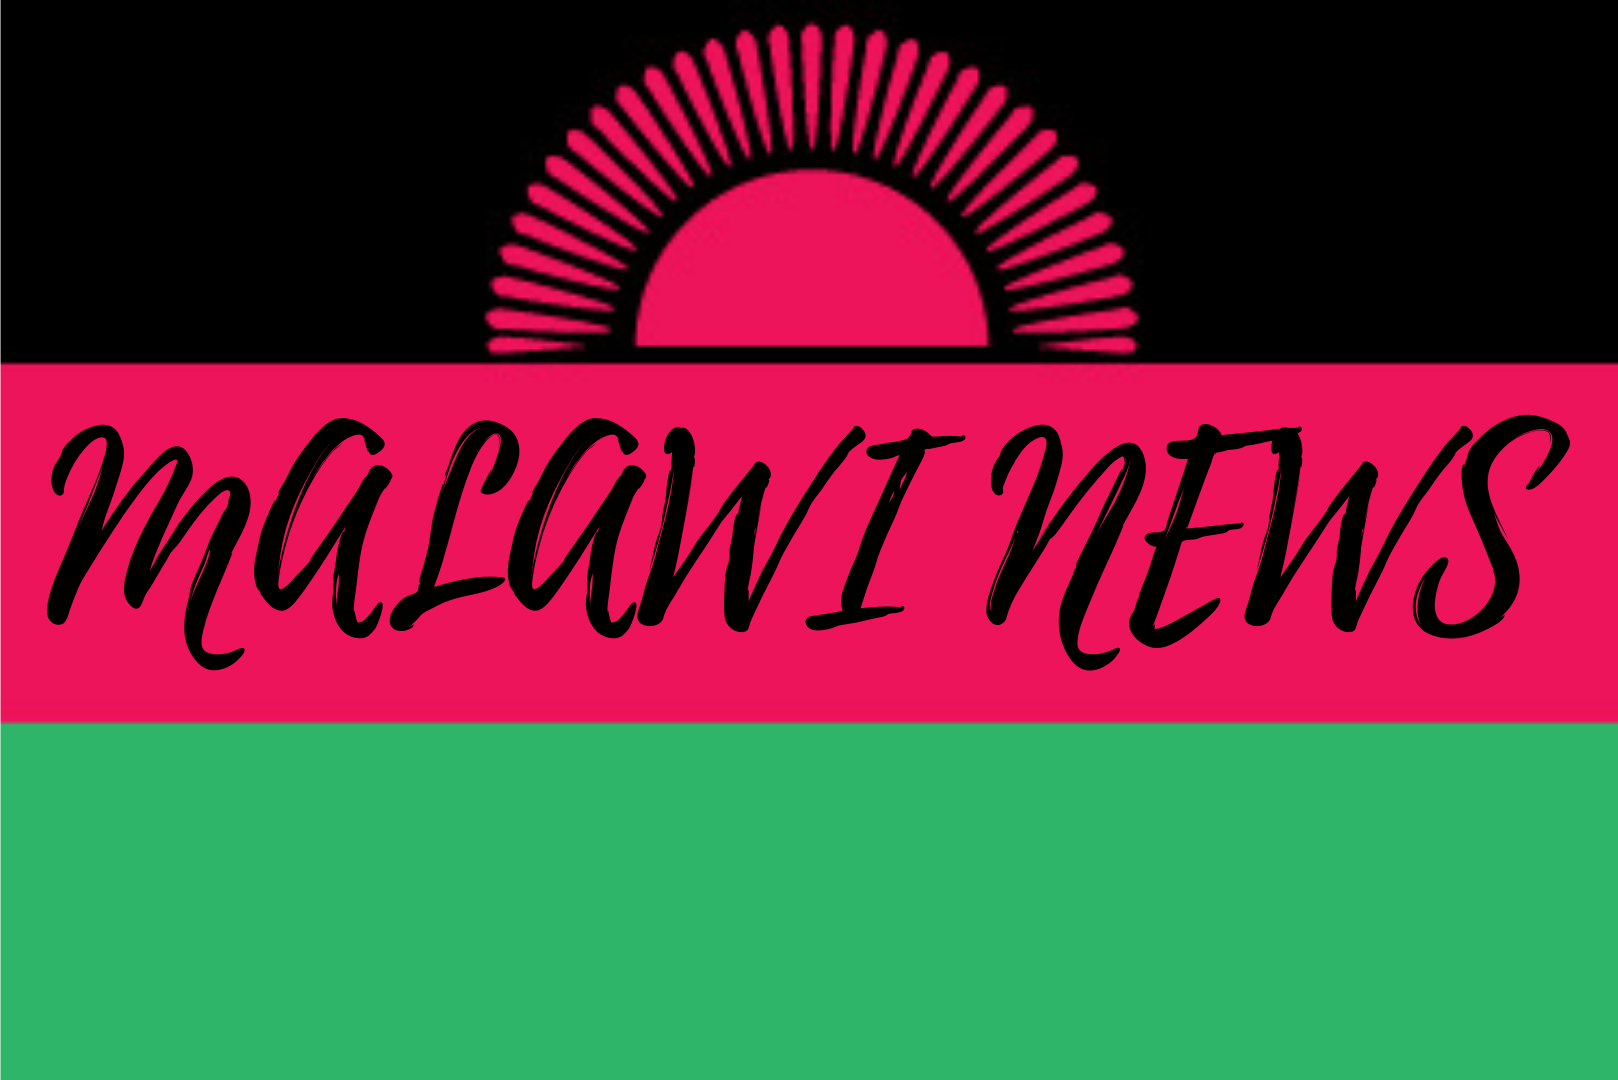 【マラウイニュース】イスラム教徒がイードを祝い、共存を求める